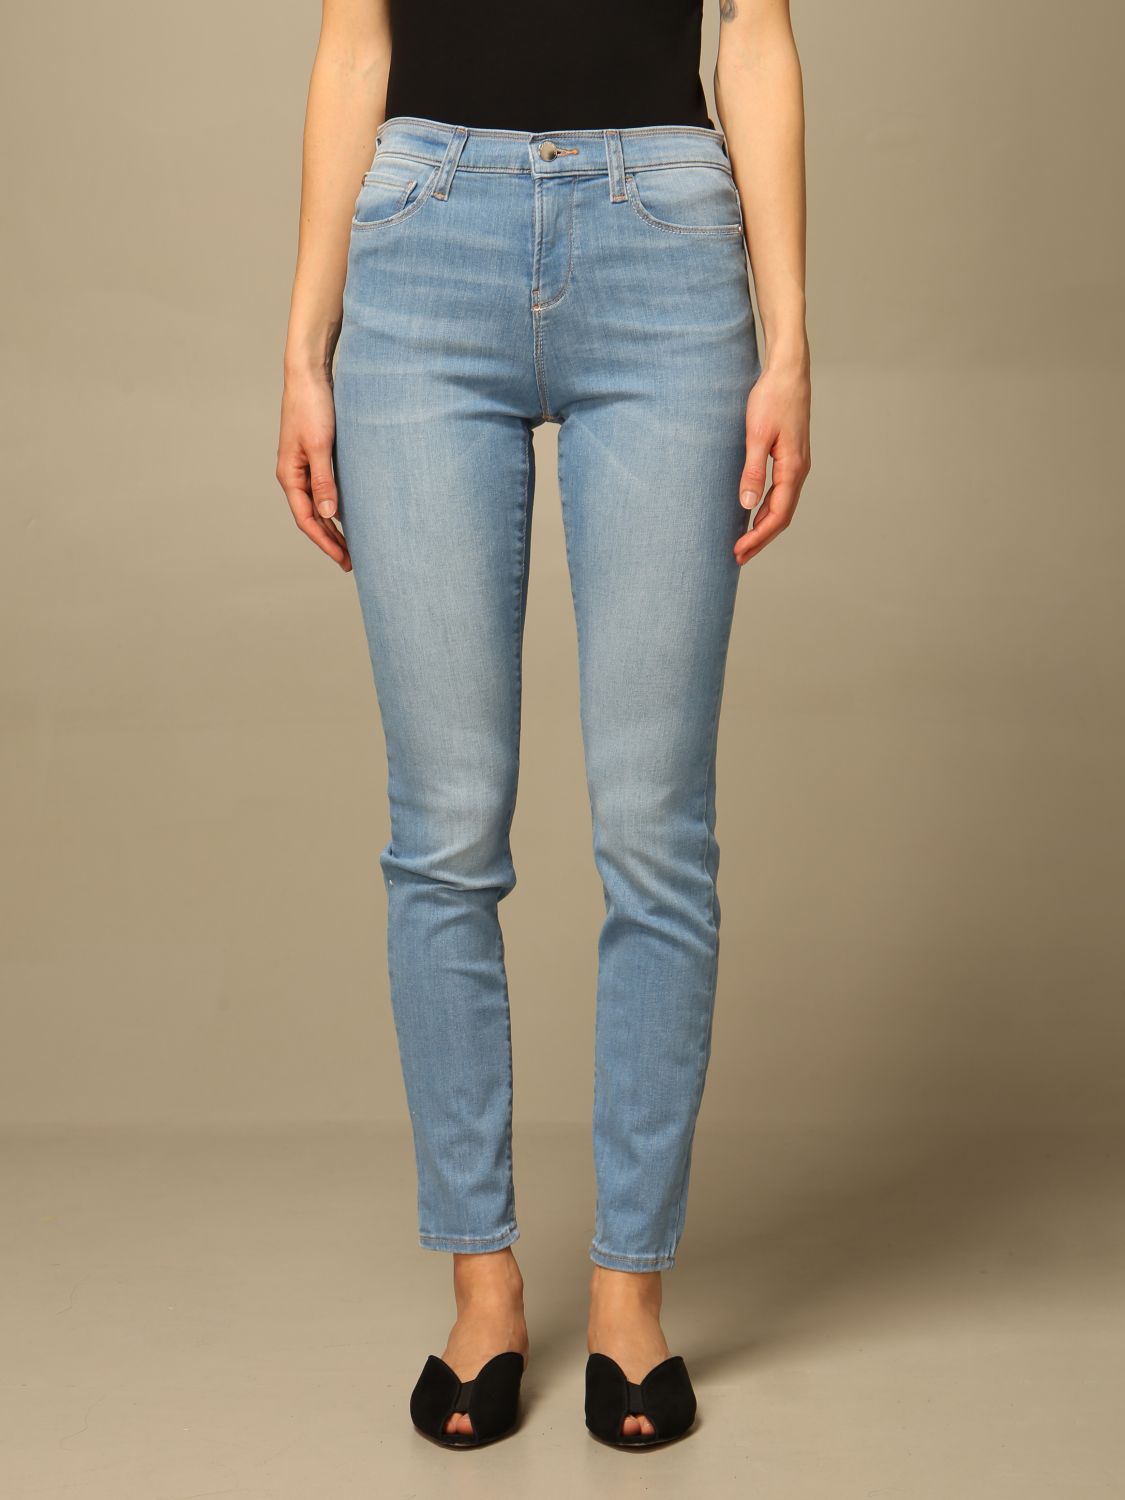 EMPORIO ARMANI: jeans in 5-pocket denim - Stone Washed | Emporio Armani ...